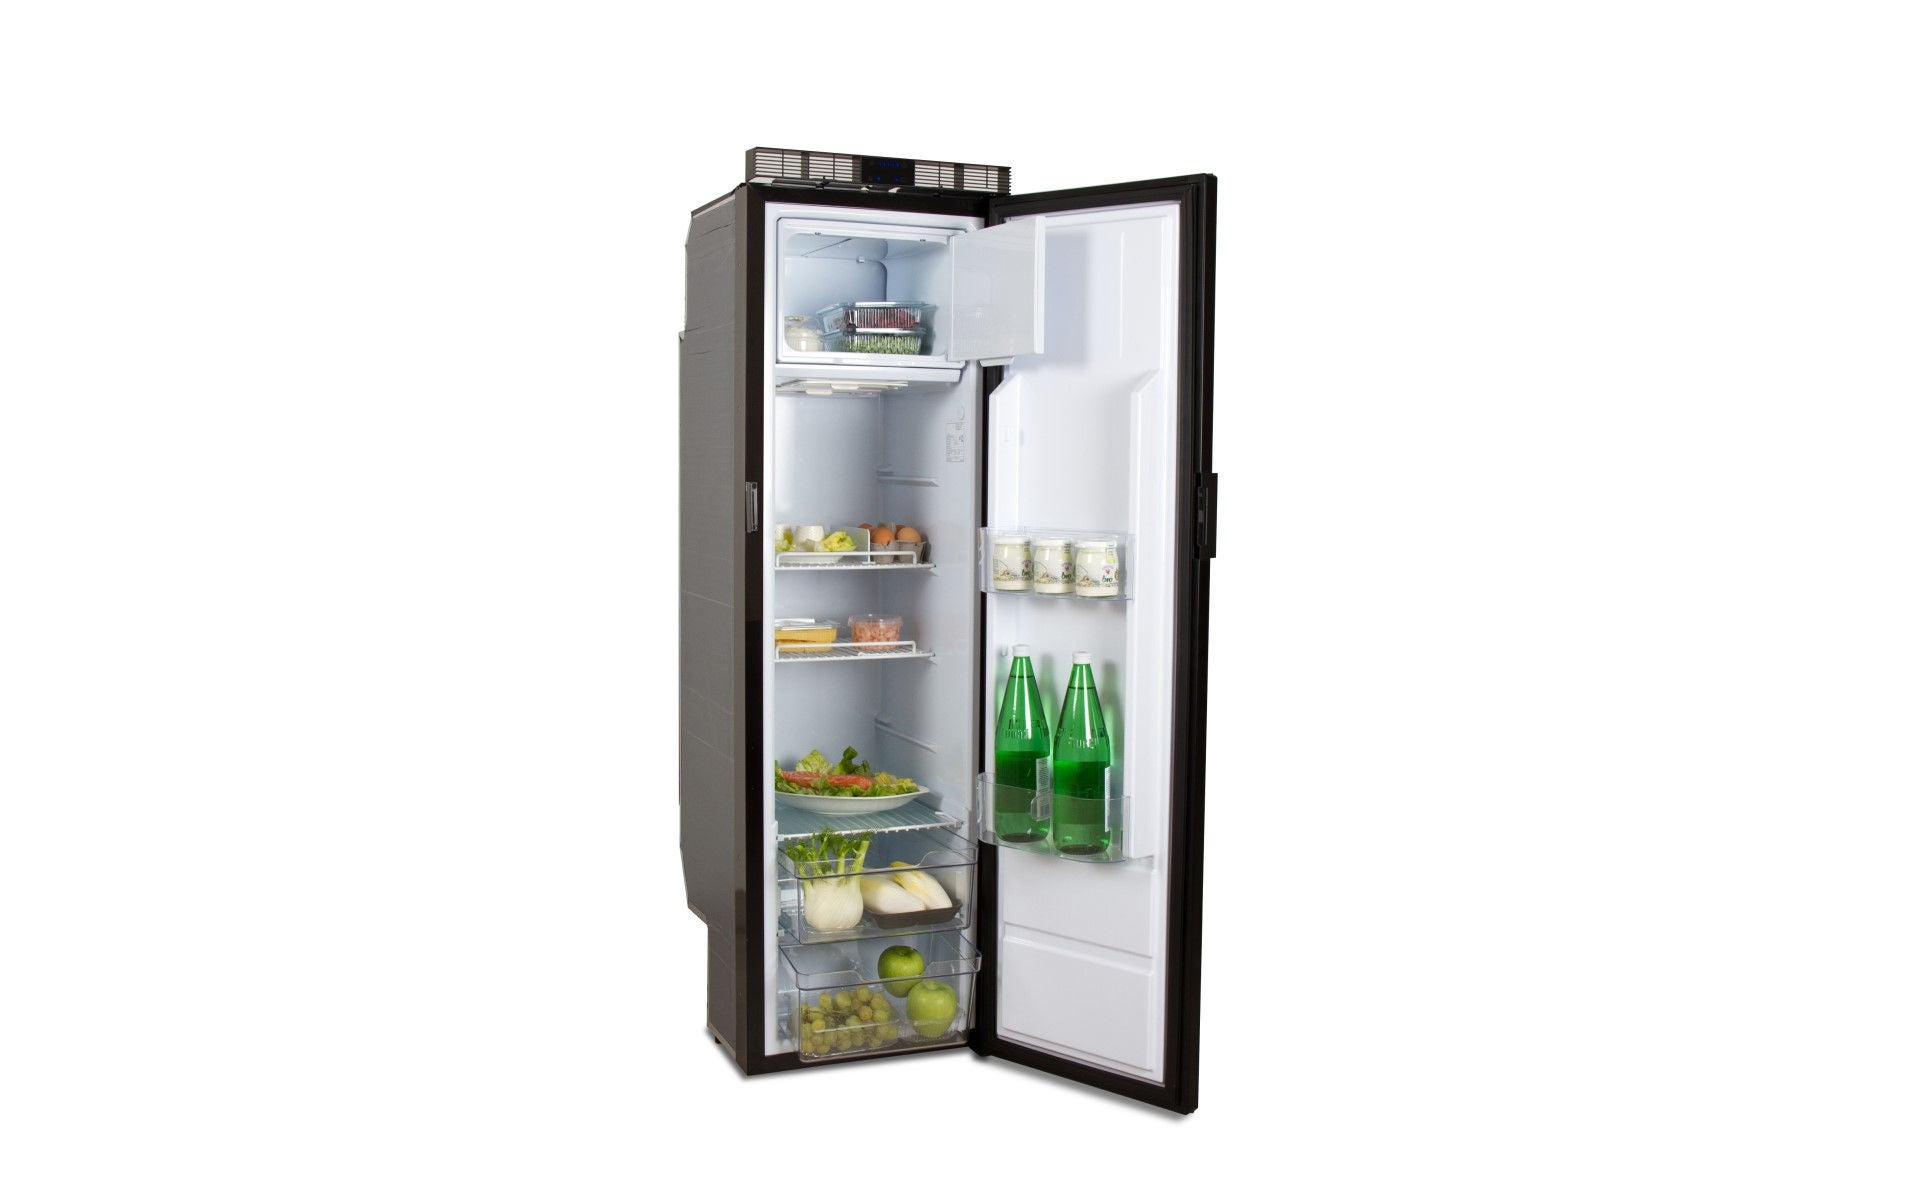 Product picture of Freeline Slim 140 fridge with open door